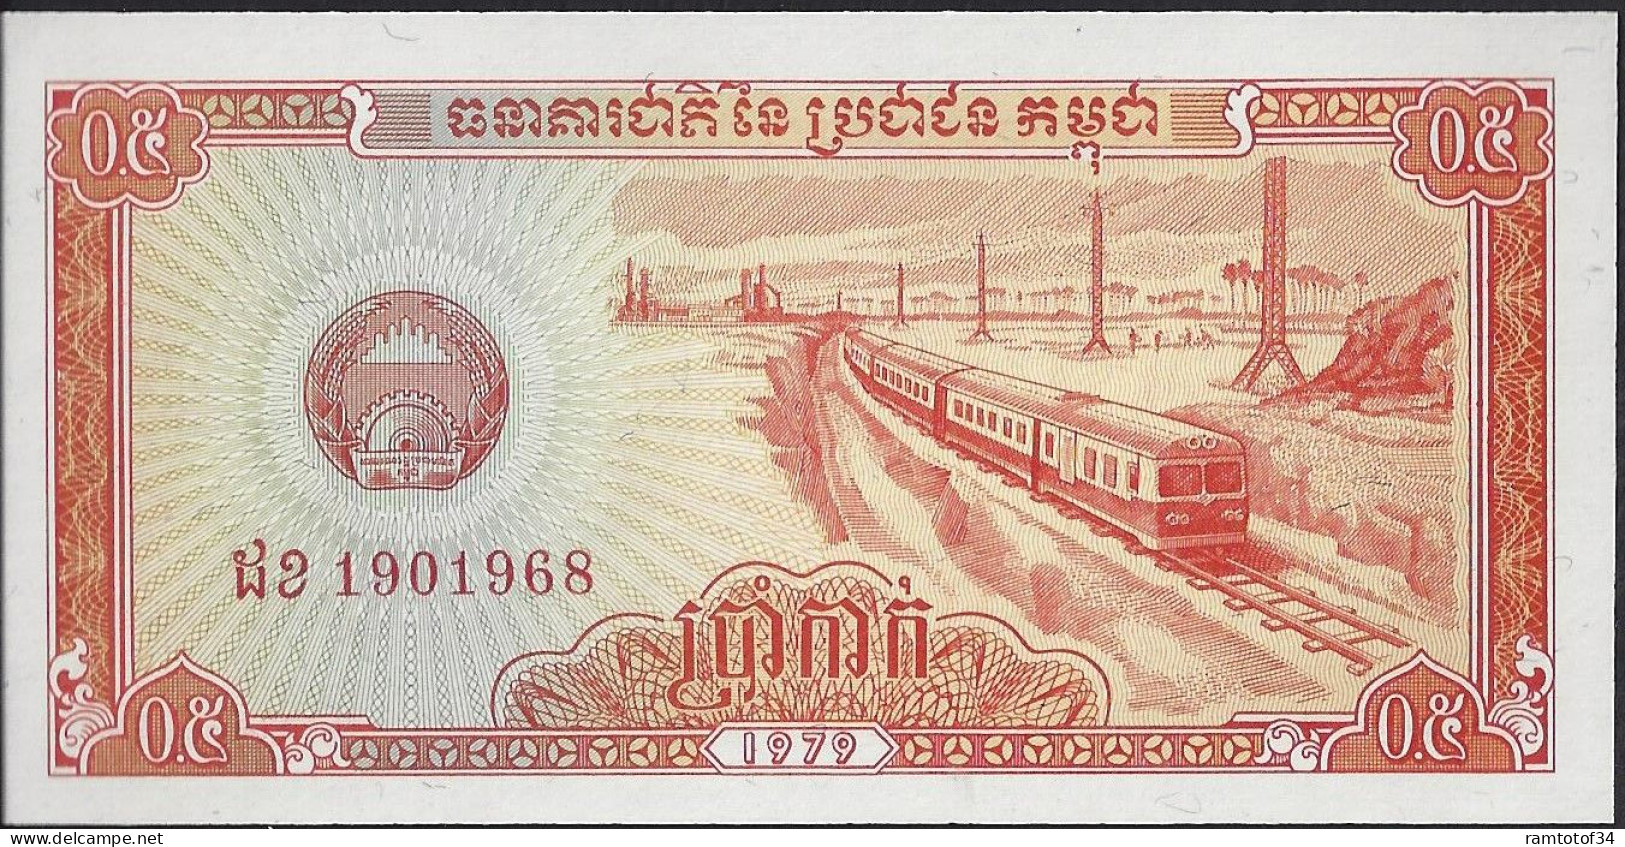 CAMBODGE - 0.5 Riels 1979 UNC - Cambodia